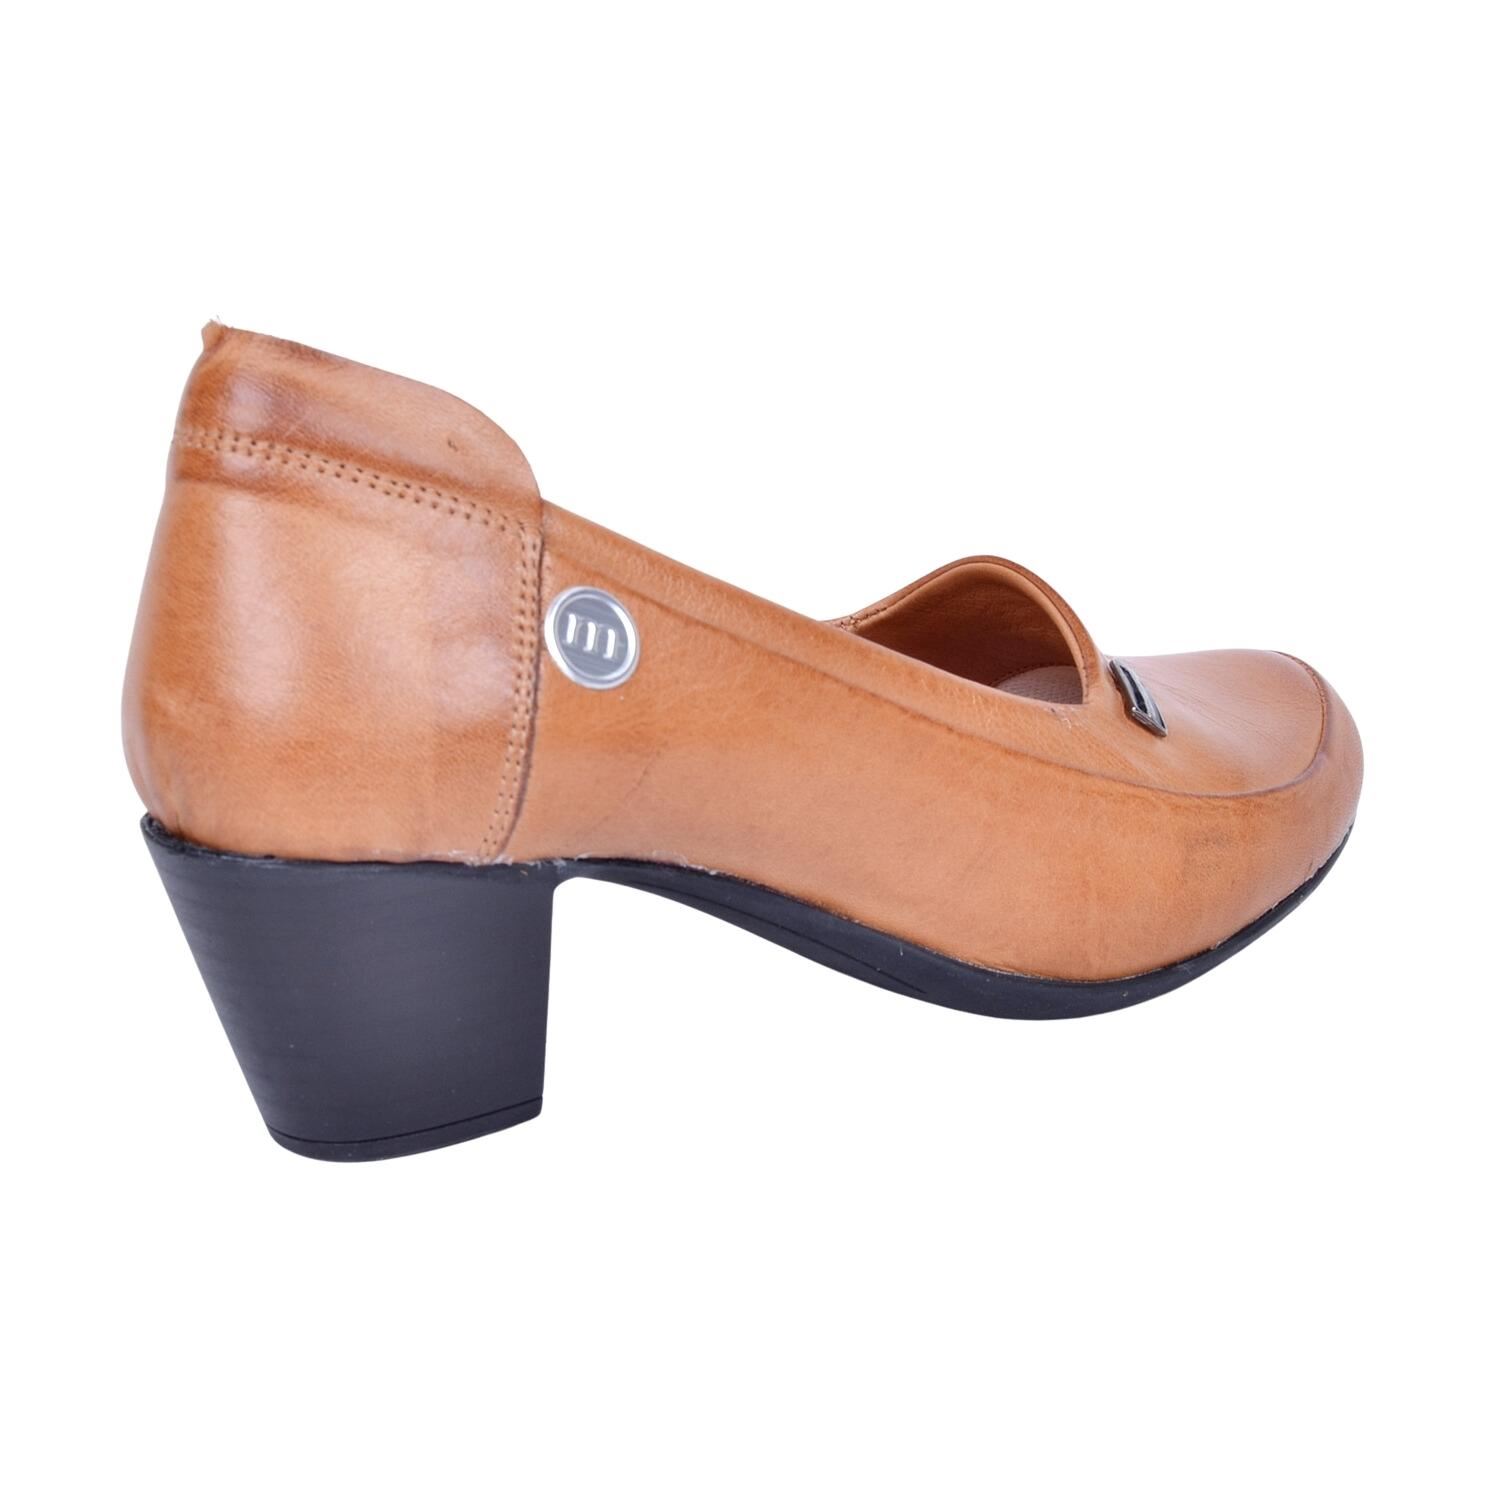 Mammamia D23YA-3640 Deri Taba Kadın Topuklu Ayakkabı